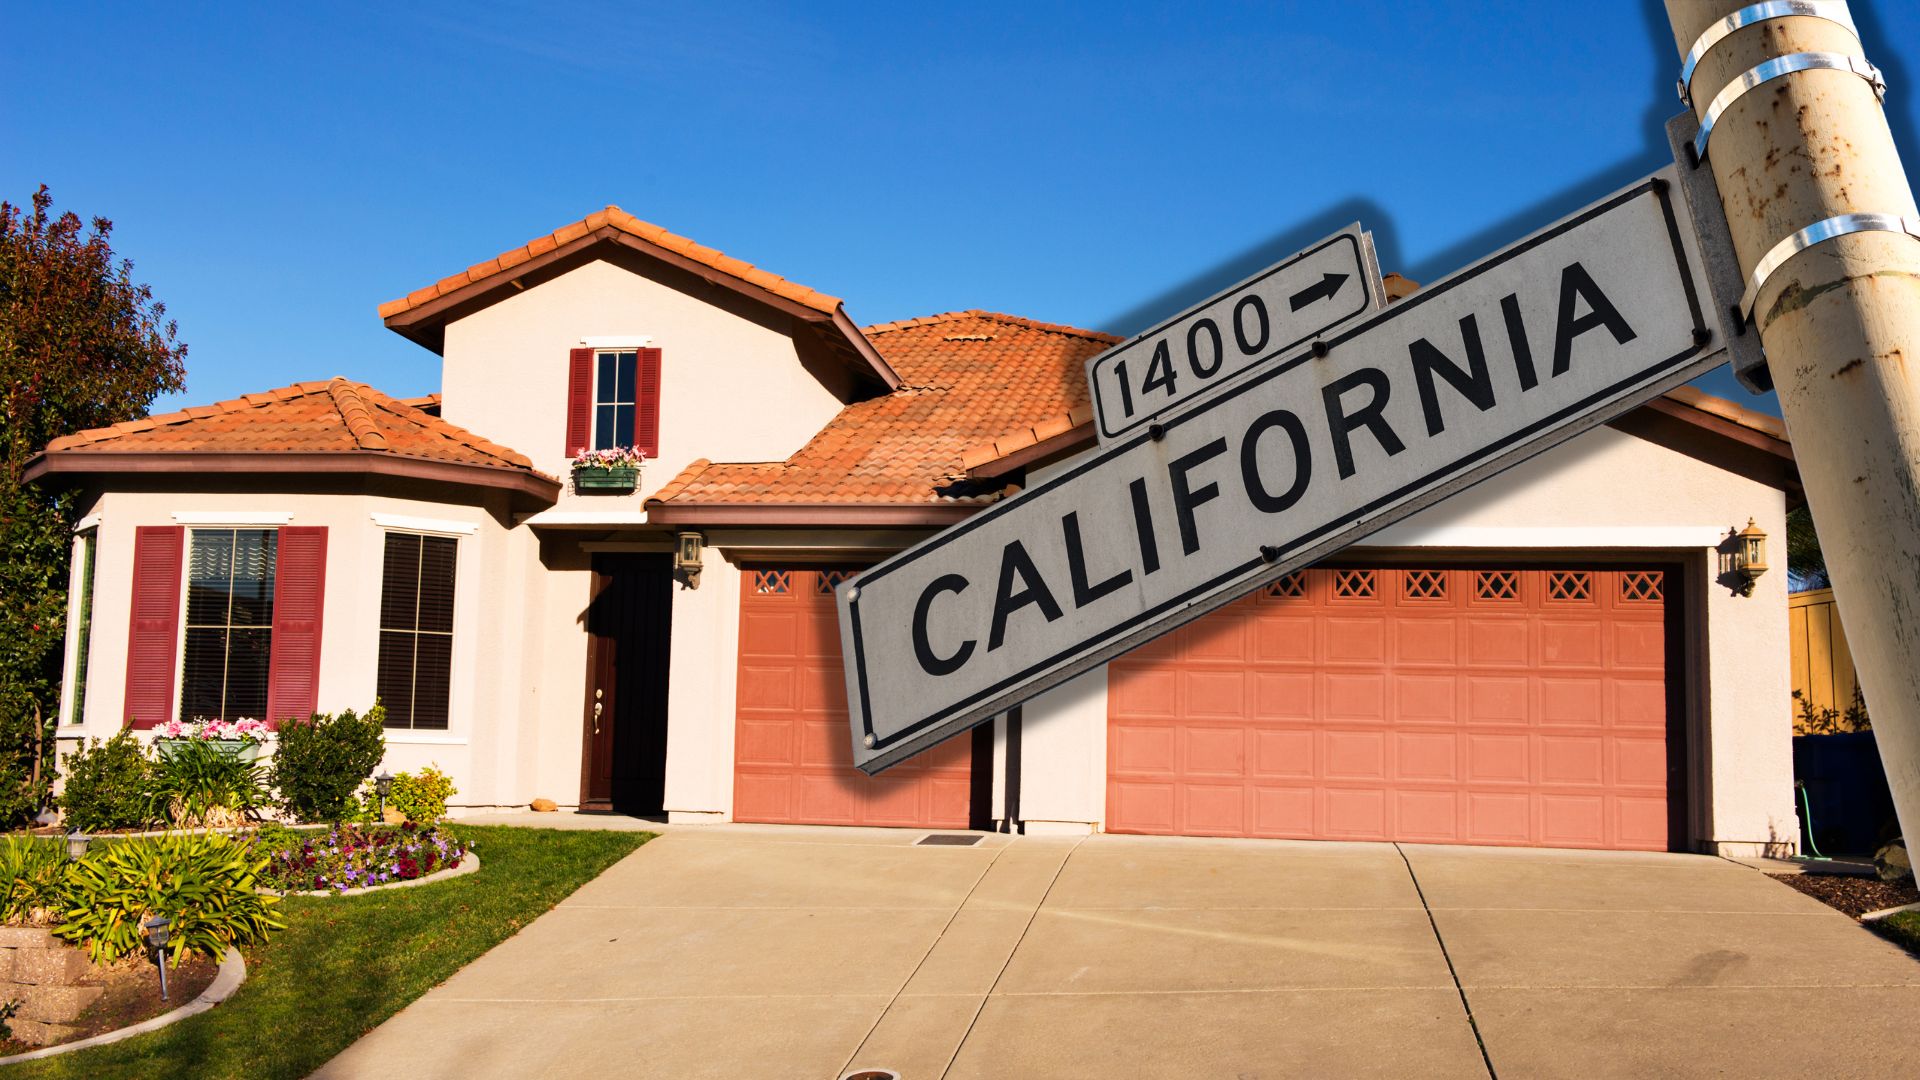 EEUU | Aquí están las viviendas más baratas de California (+PRECIOS)